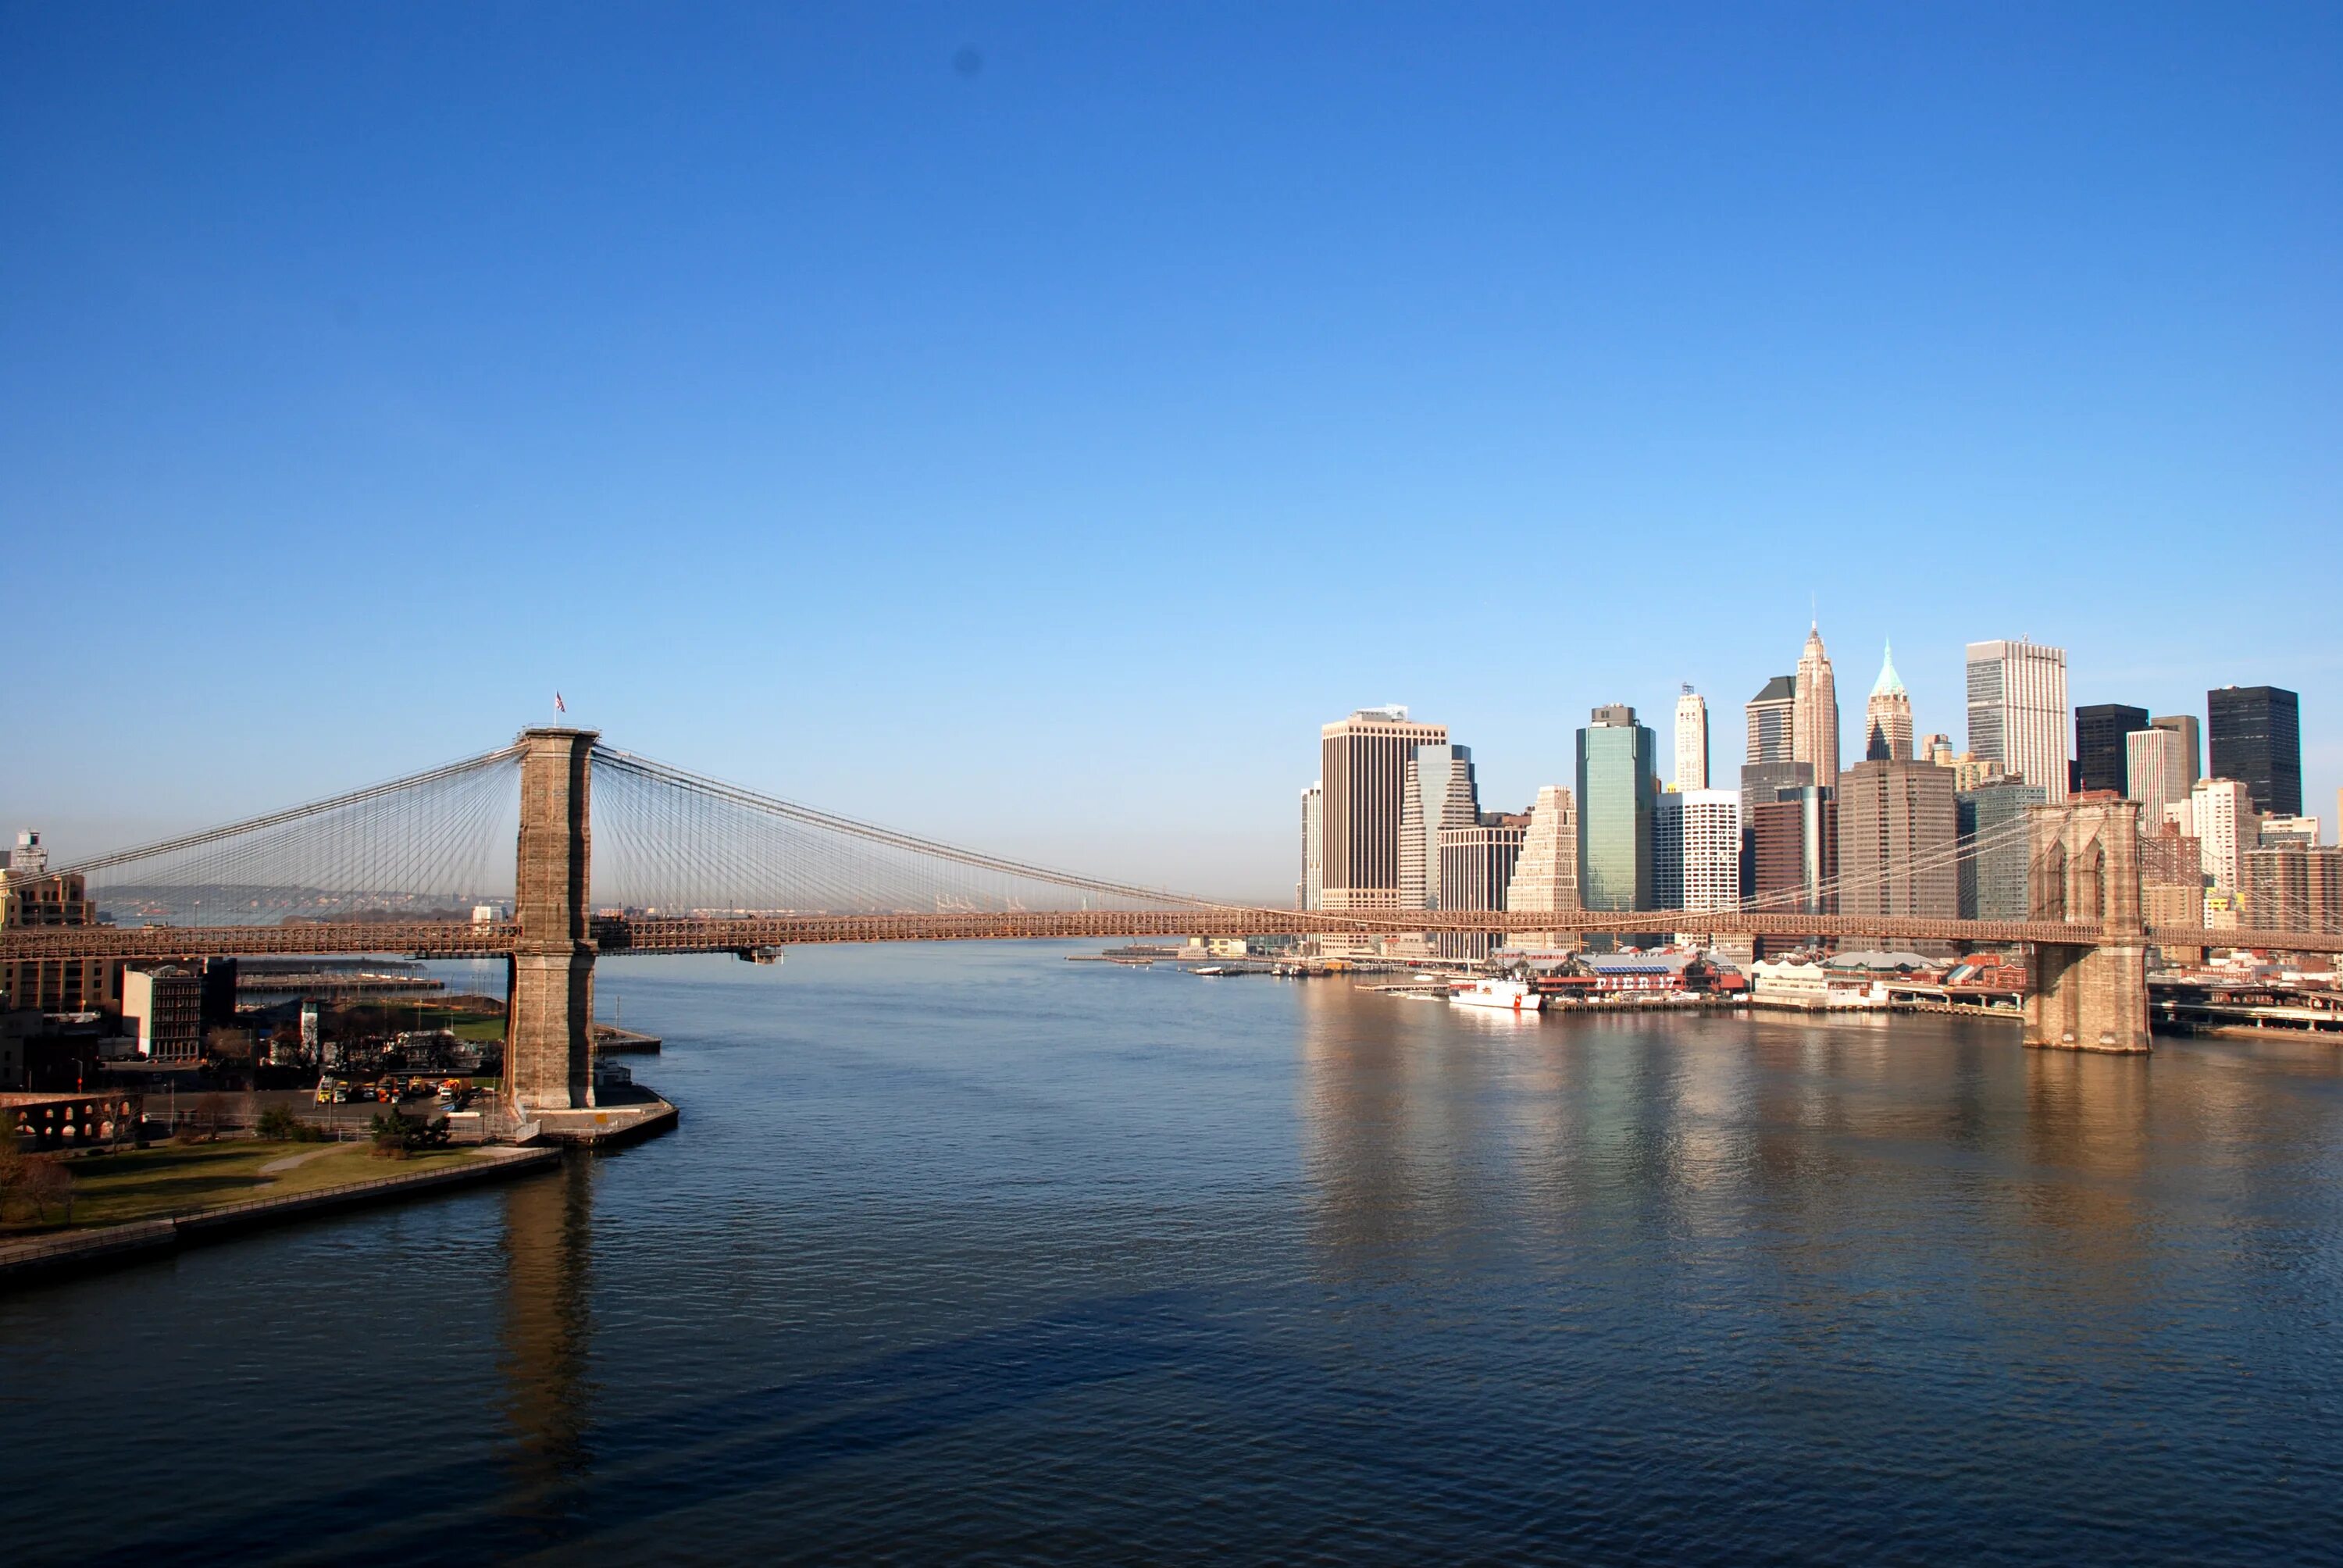 Бруклин мост. Бруклинский мост Нью-Йорк. Бруклинский мост Манхеттен в Нью-Йорке. Бруклинский мост Нью-Йорк панорама. Вид с Бруклинского моста в Нью-Йорке.